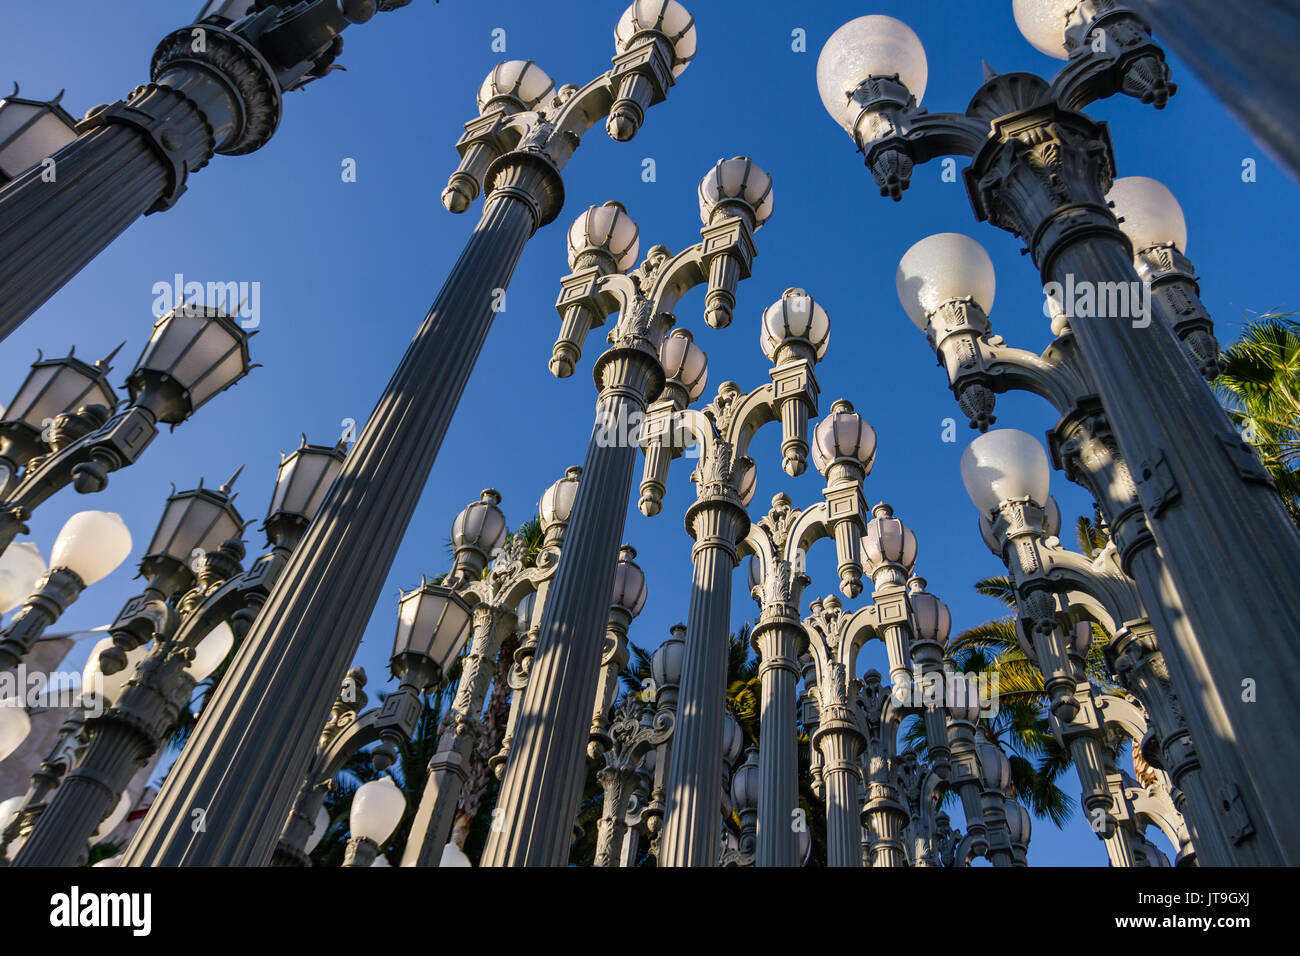 La lumière urbaine est une grande sculpture assemblage par Chris Burden situé à l'entrée du boulevard Wilshire Los Angeles County Museum of Art. Banque D'Images